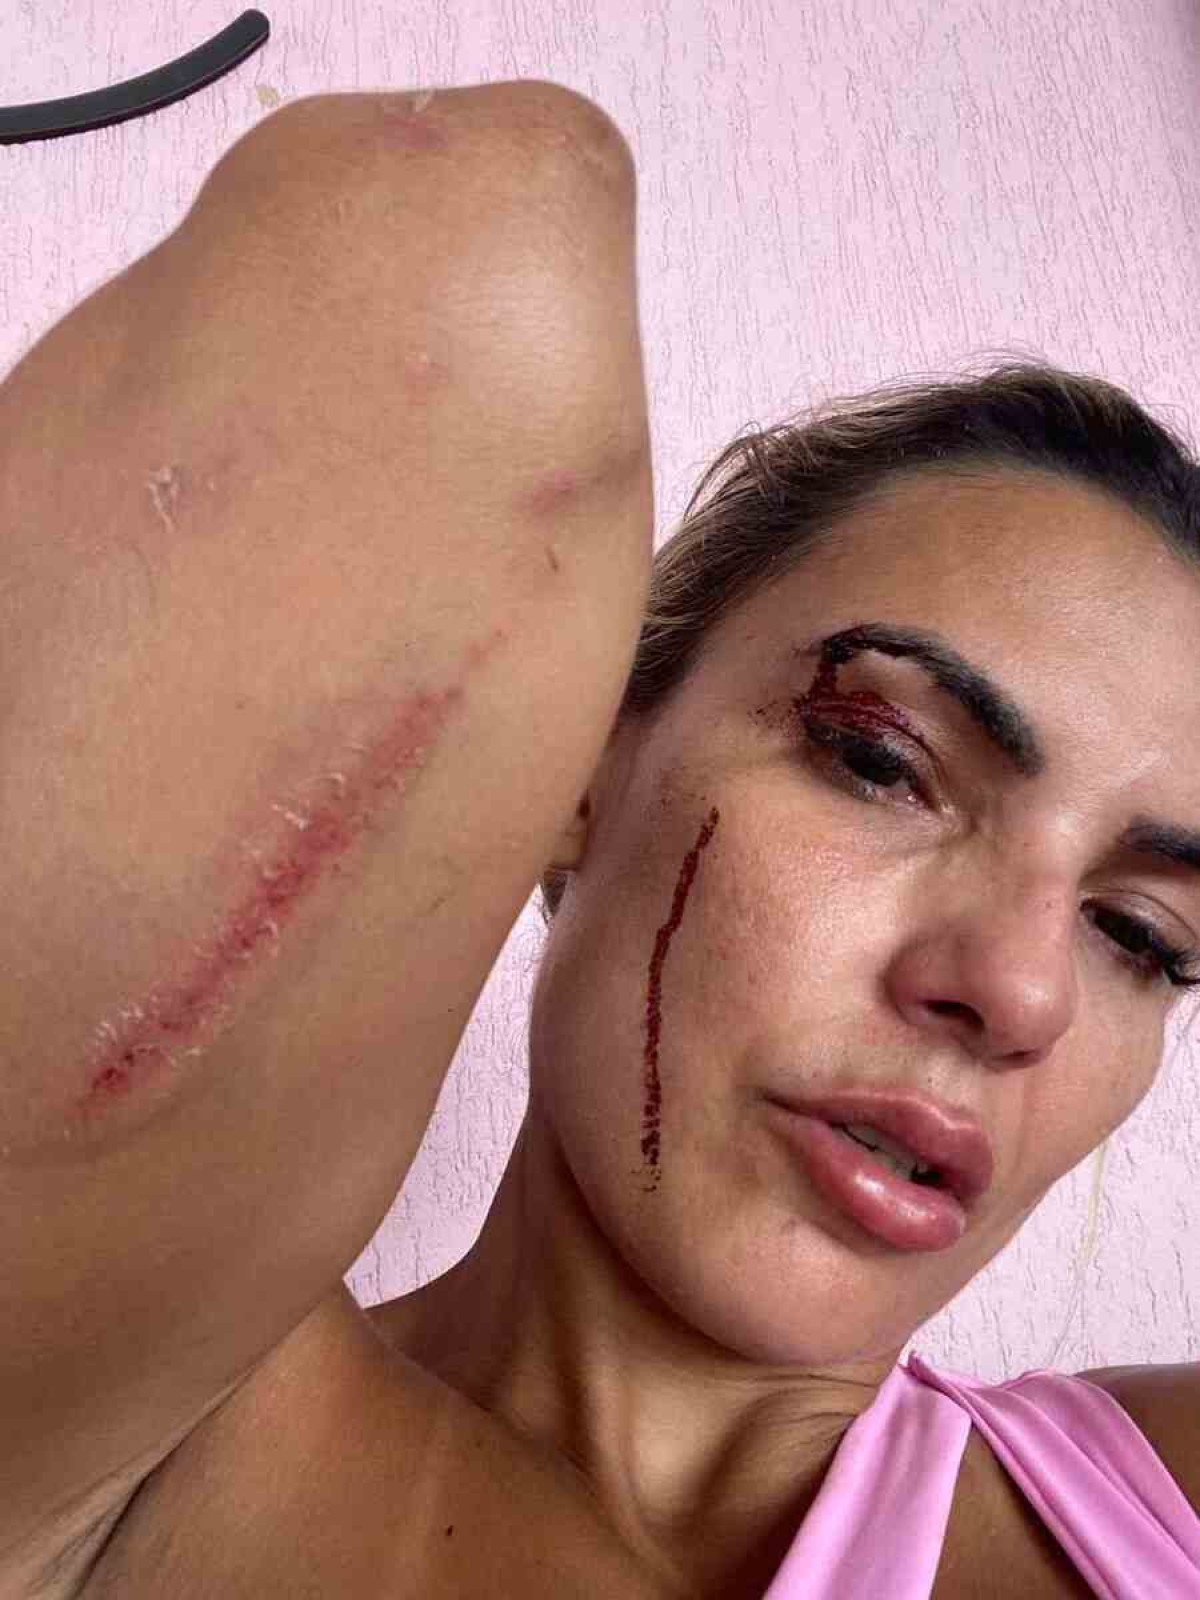 Vídeo mostra mulher sendo agredida pelo ex-companheiro